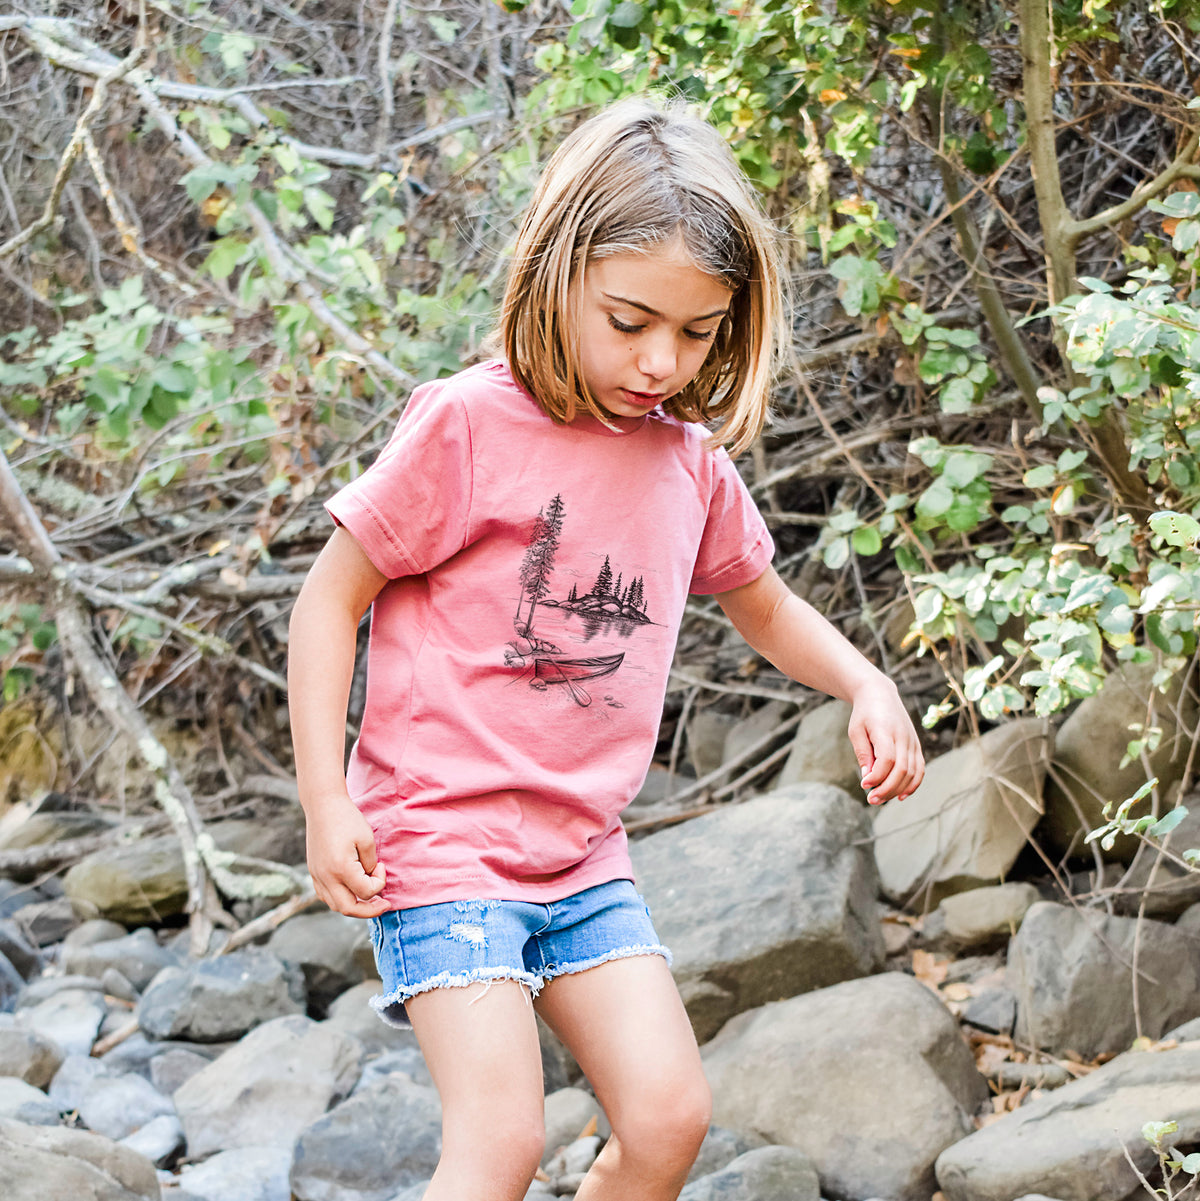 Lakeside Canoe - Kids Shirt